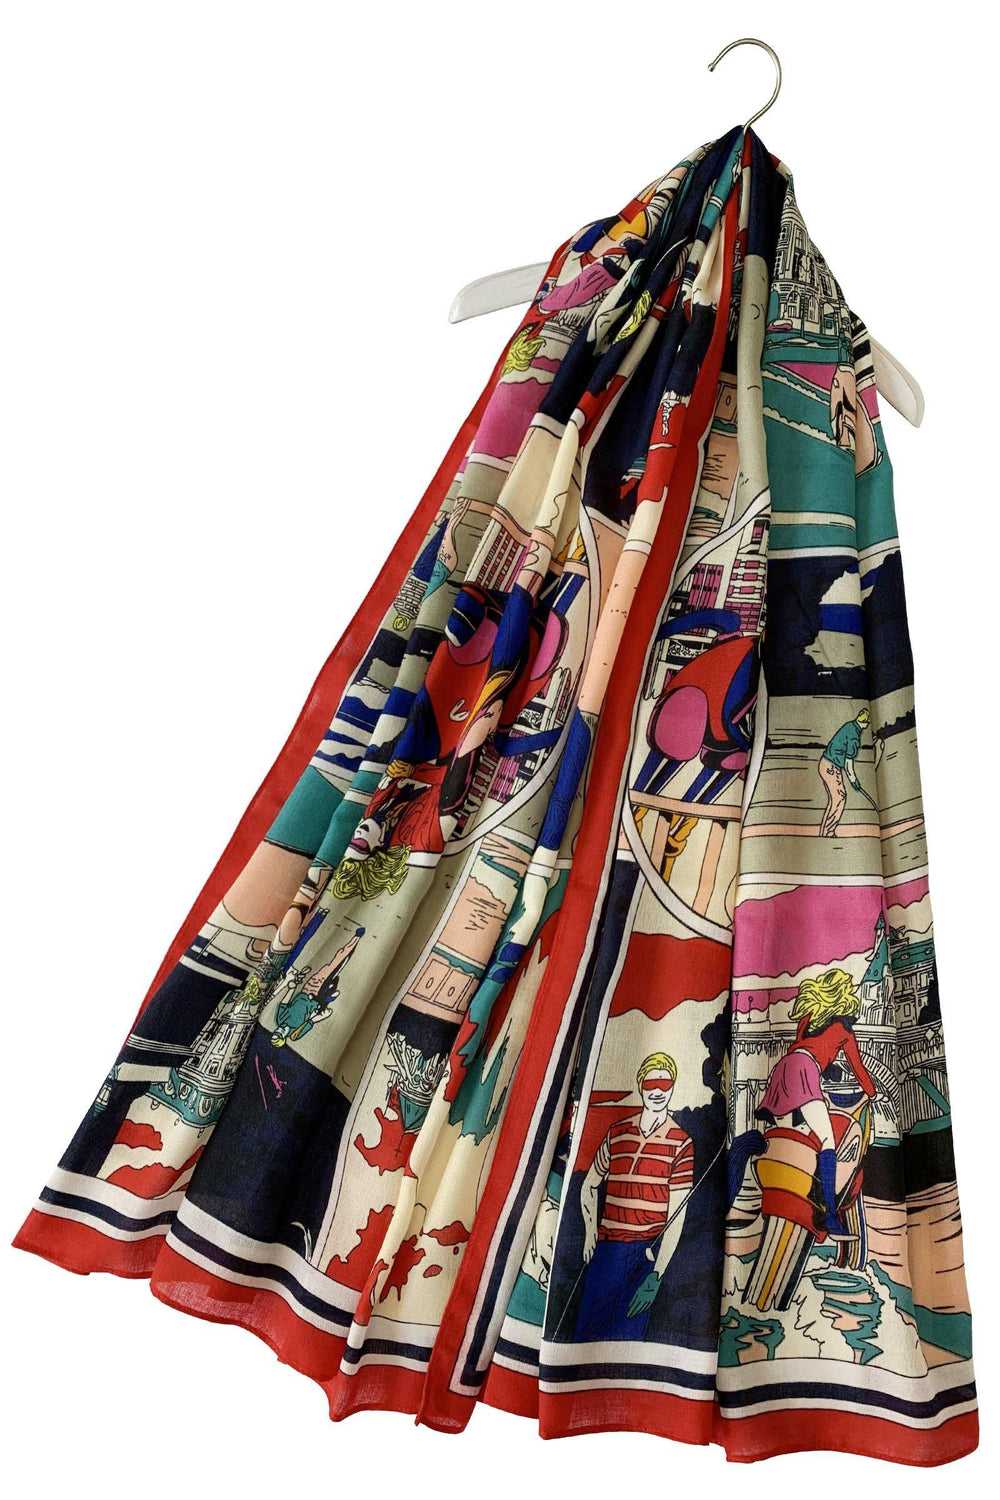 Bavlněná Šála-šátek, 85 cm x 180 cm, Roy Lichtenstein - Pop Art ve stylu 60. let - Multilady.cz